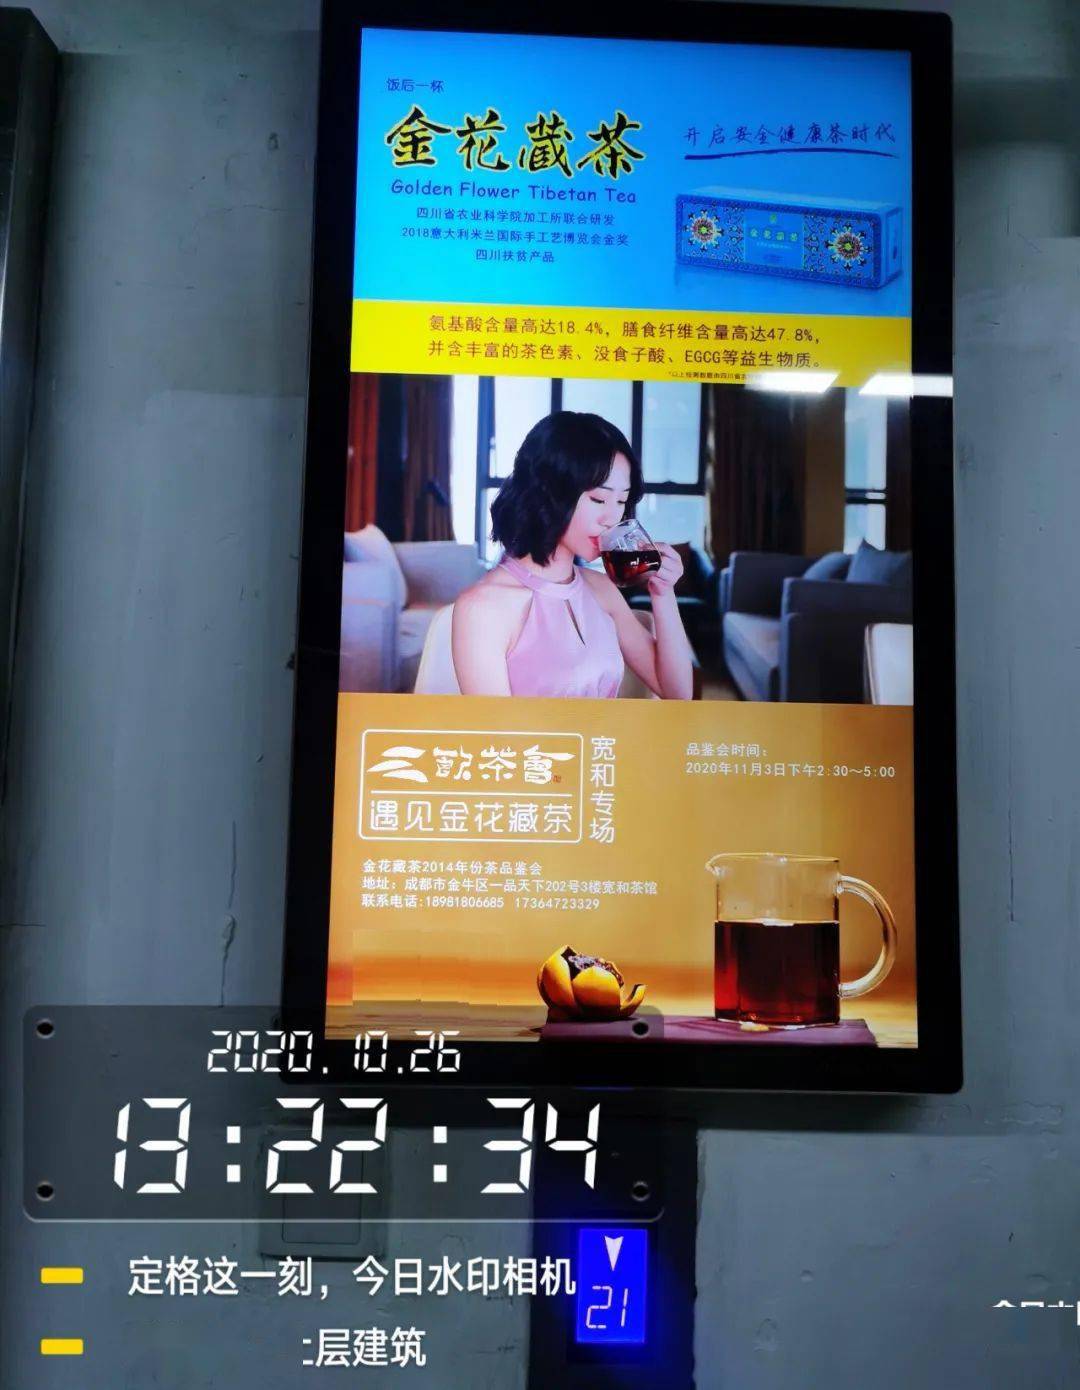 雅安市雅州恒泰茶业有限公司同分众传媒签定了成都电梯广告投放合作